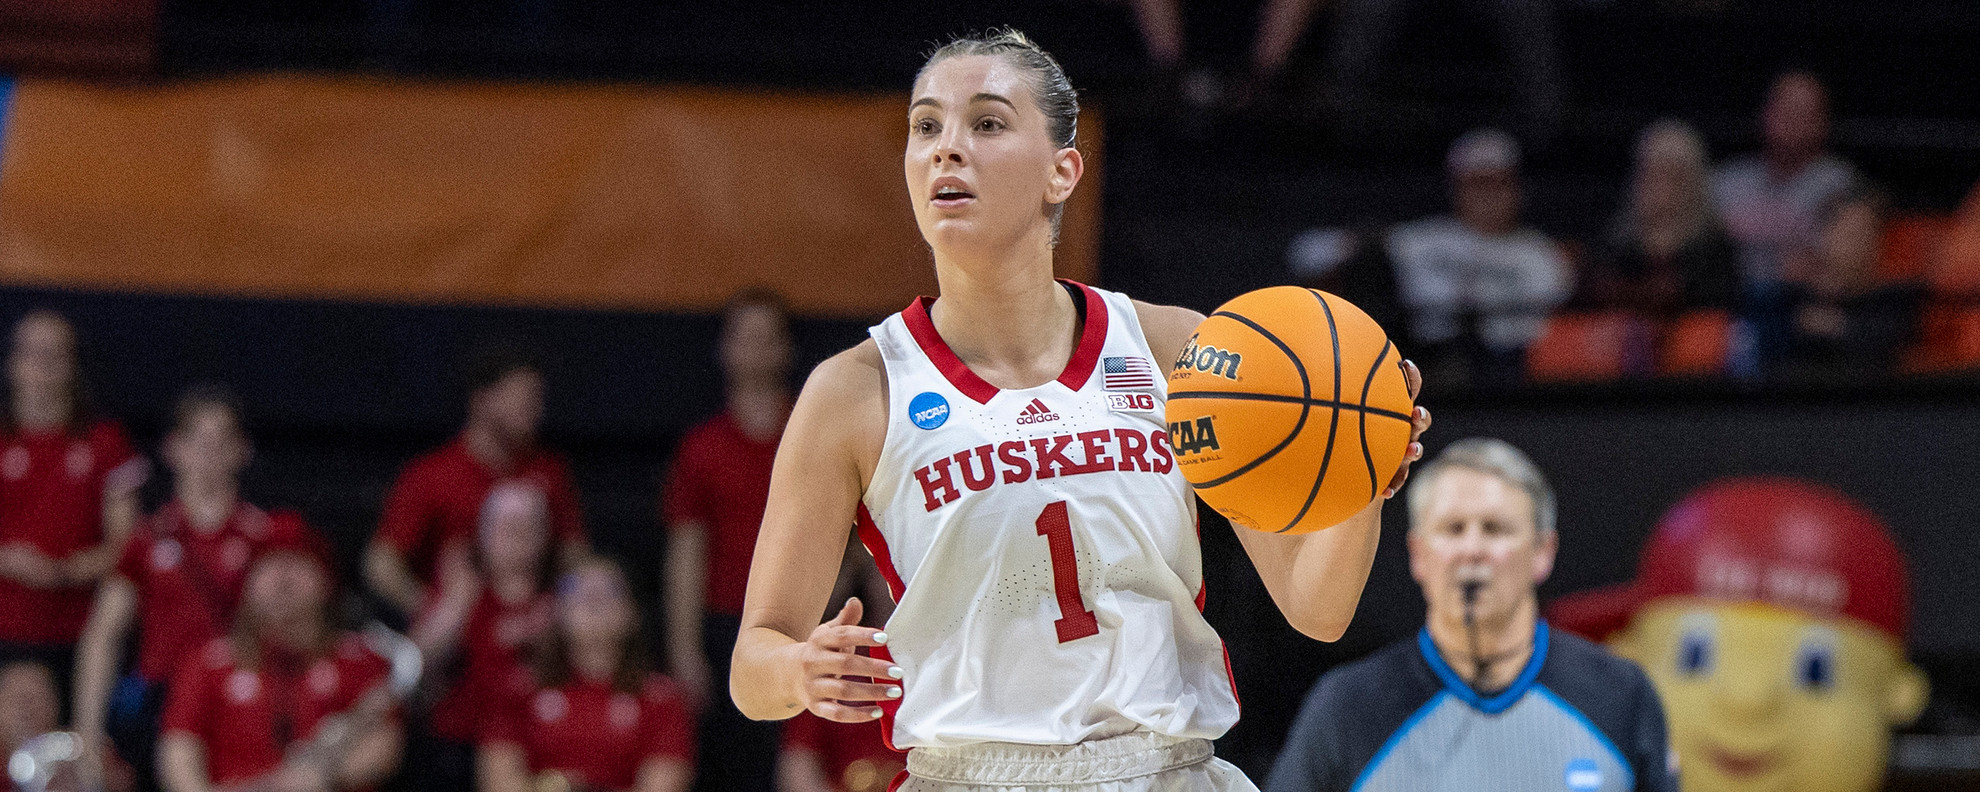 Shelley fait ses débuts en pré-saison WNBA – Université du Nebraska